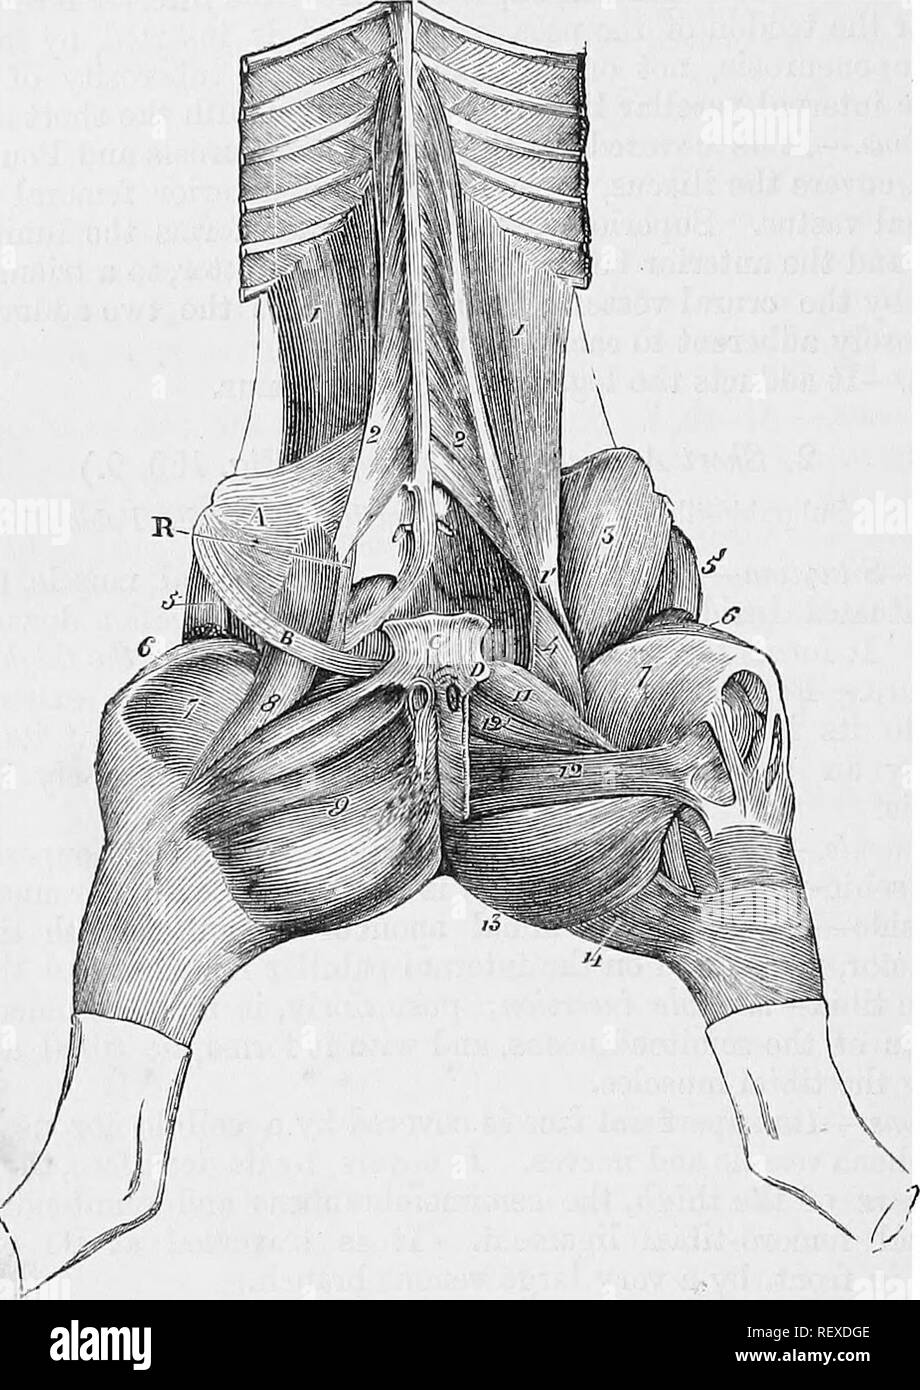 . La anatomia comparata degli animali domestici. Anatomia Veterinaria. 290 TES MUSCOLI. è attaccato, sull'aspetto interno del femore, per le impronte che circonda il forame nutriente-mouabZe inserimento. " O .i,- , "j "io"" azione.-l'pectineus è un adduttore e flessore della coscia, e anche la ruota verso l'interno. Fig. 130.. Muscoli del StTBLUMBAR, ROTULE E INTERNO CKUEAL EEQIONS. 1, Psoas magnus; 1', il suo tendine terminale; 2, Psoas parvus; 3, Iliacus; 4, la sua piccola porzione interna; 5, muscolo della fascia lata; 6, Rectus della coscia; 7, Vastus internus; 8, lungo adduttore della gamba; Foto Stock